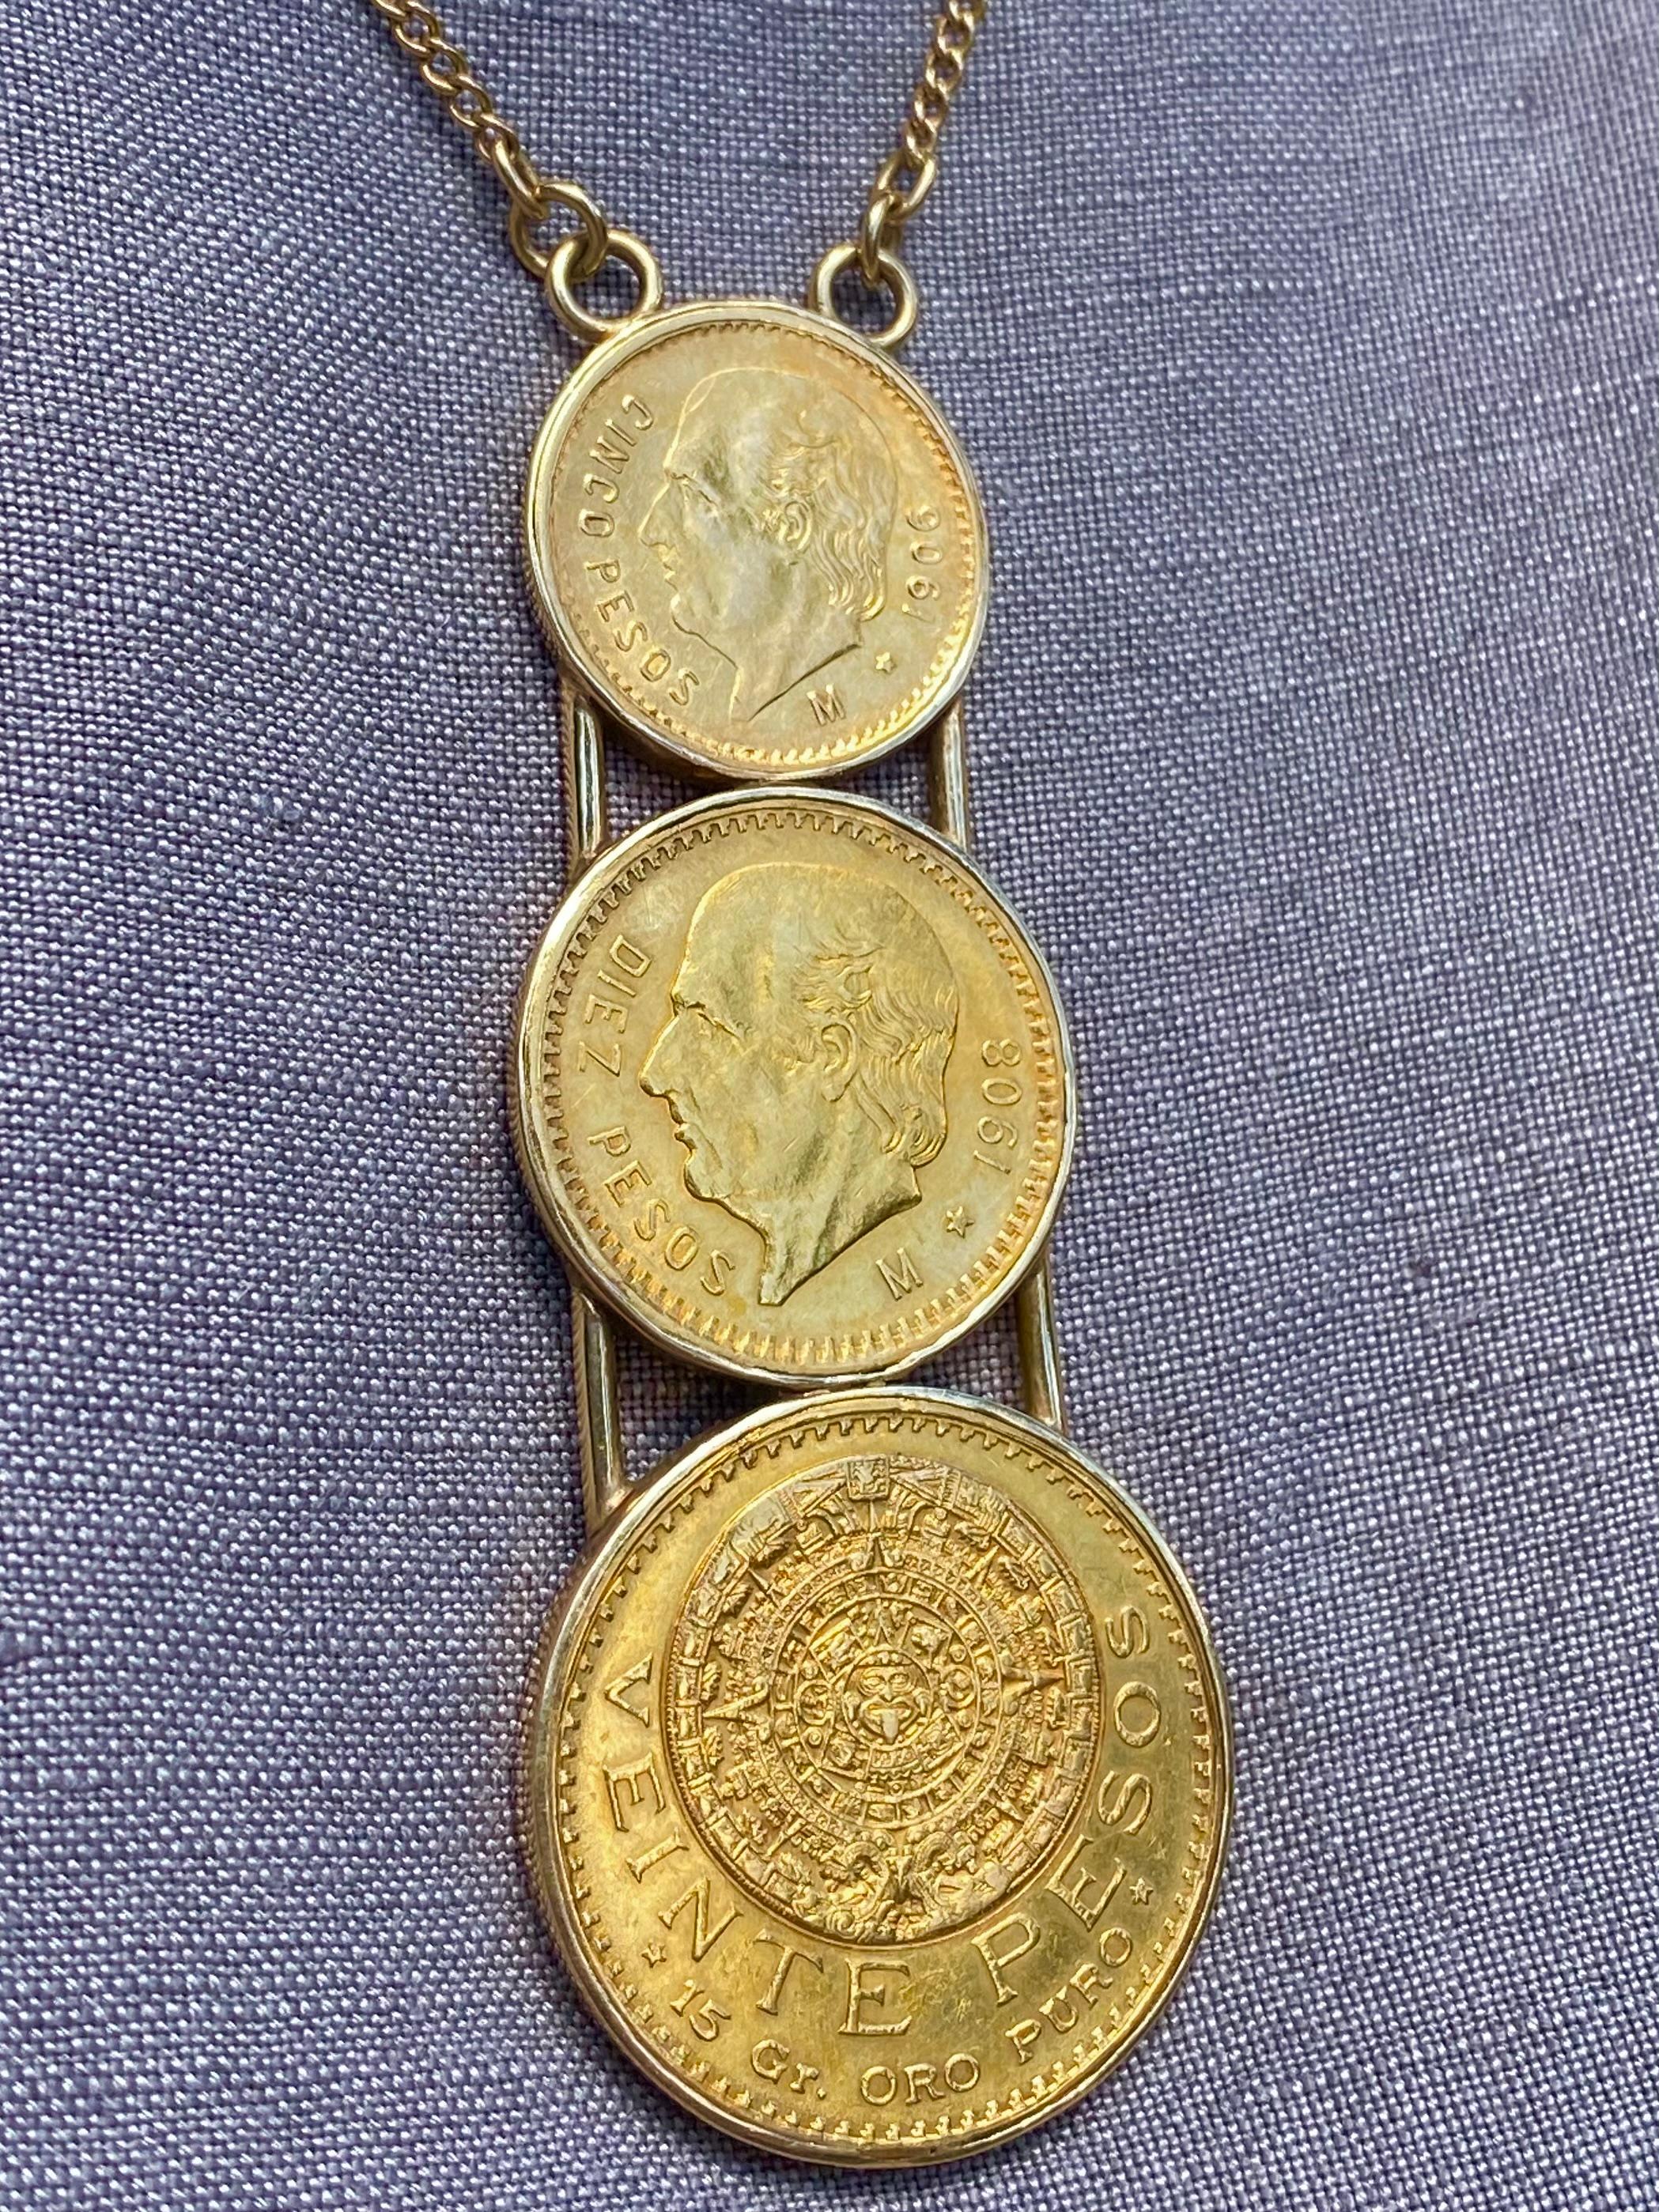 1906 cinco pesos gold coin